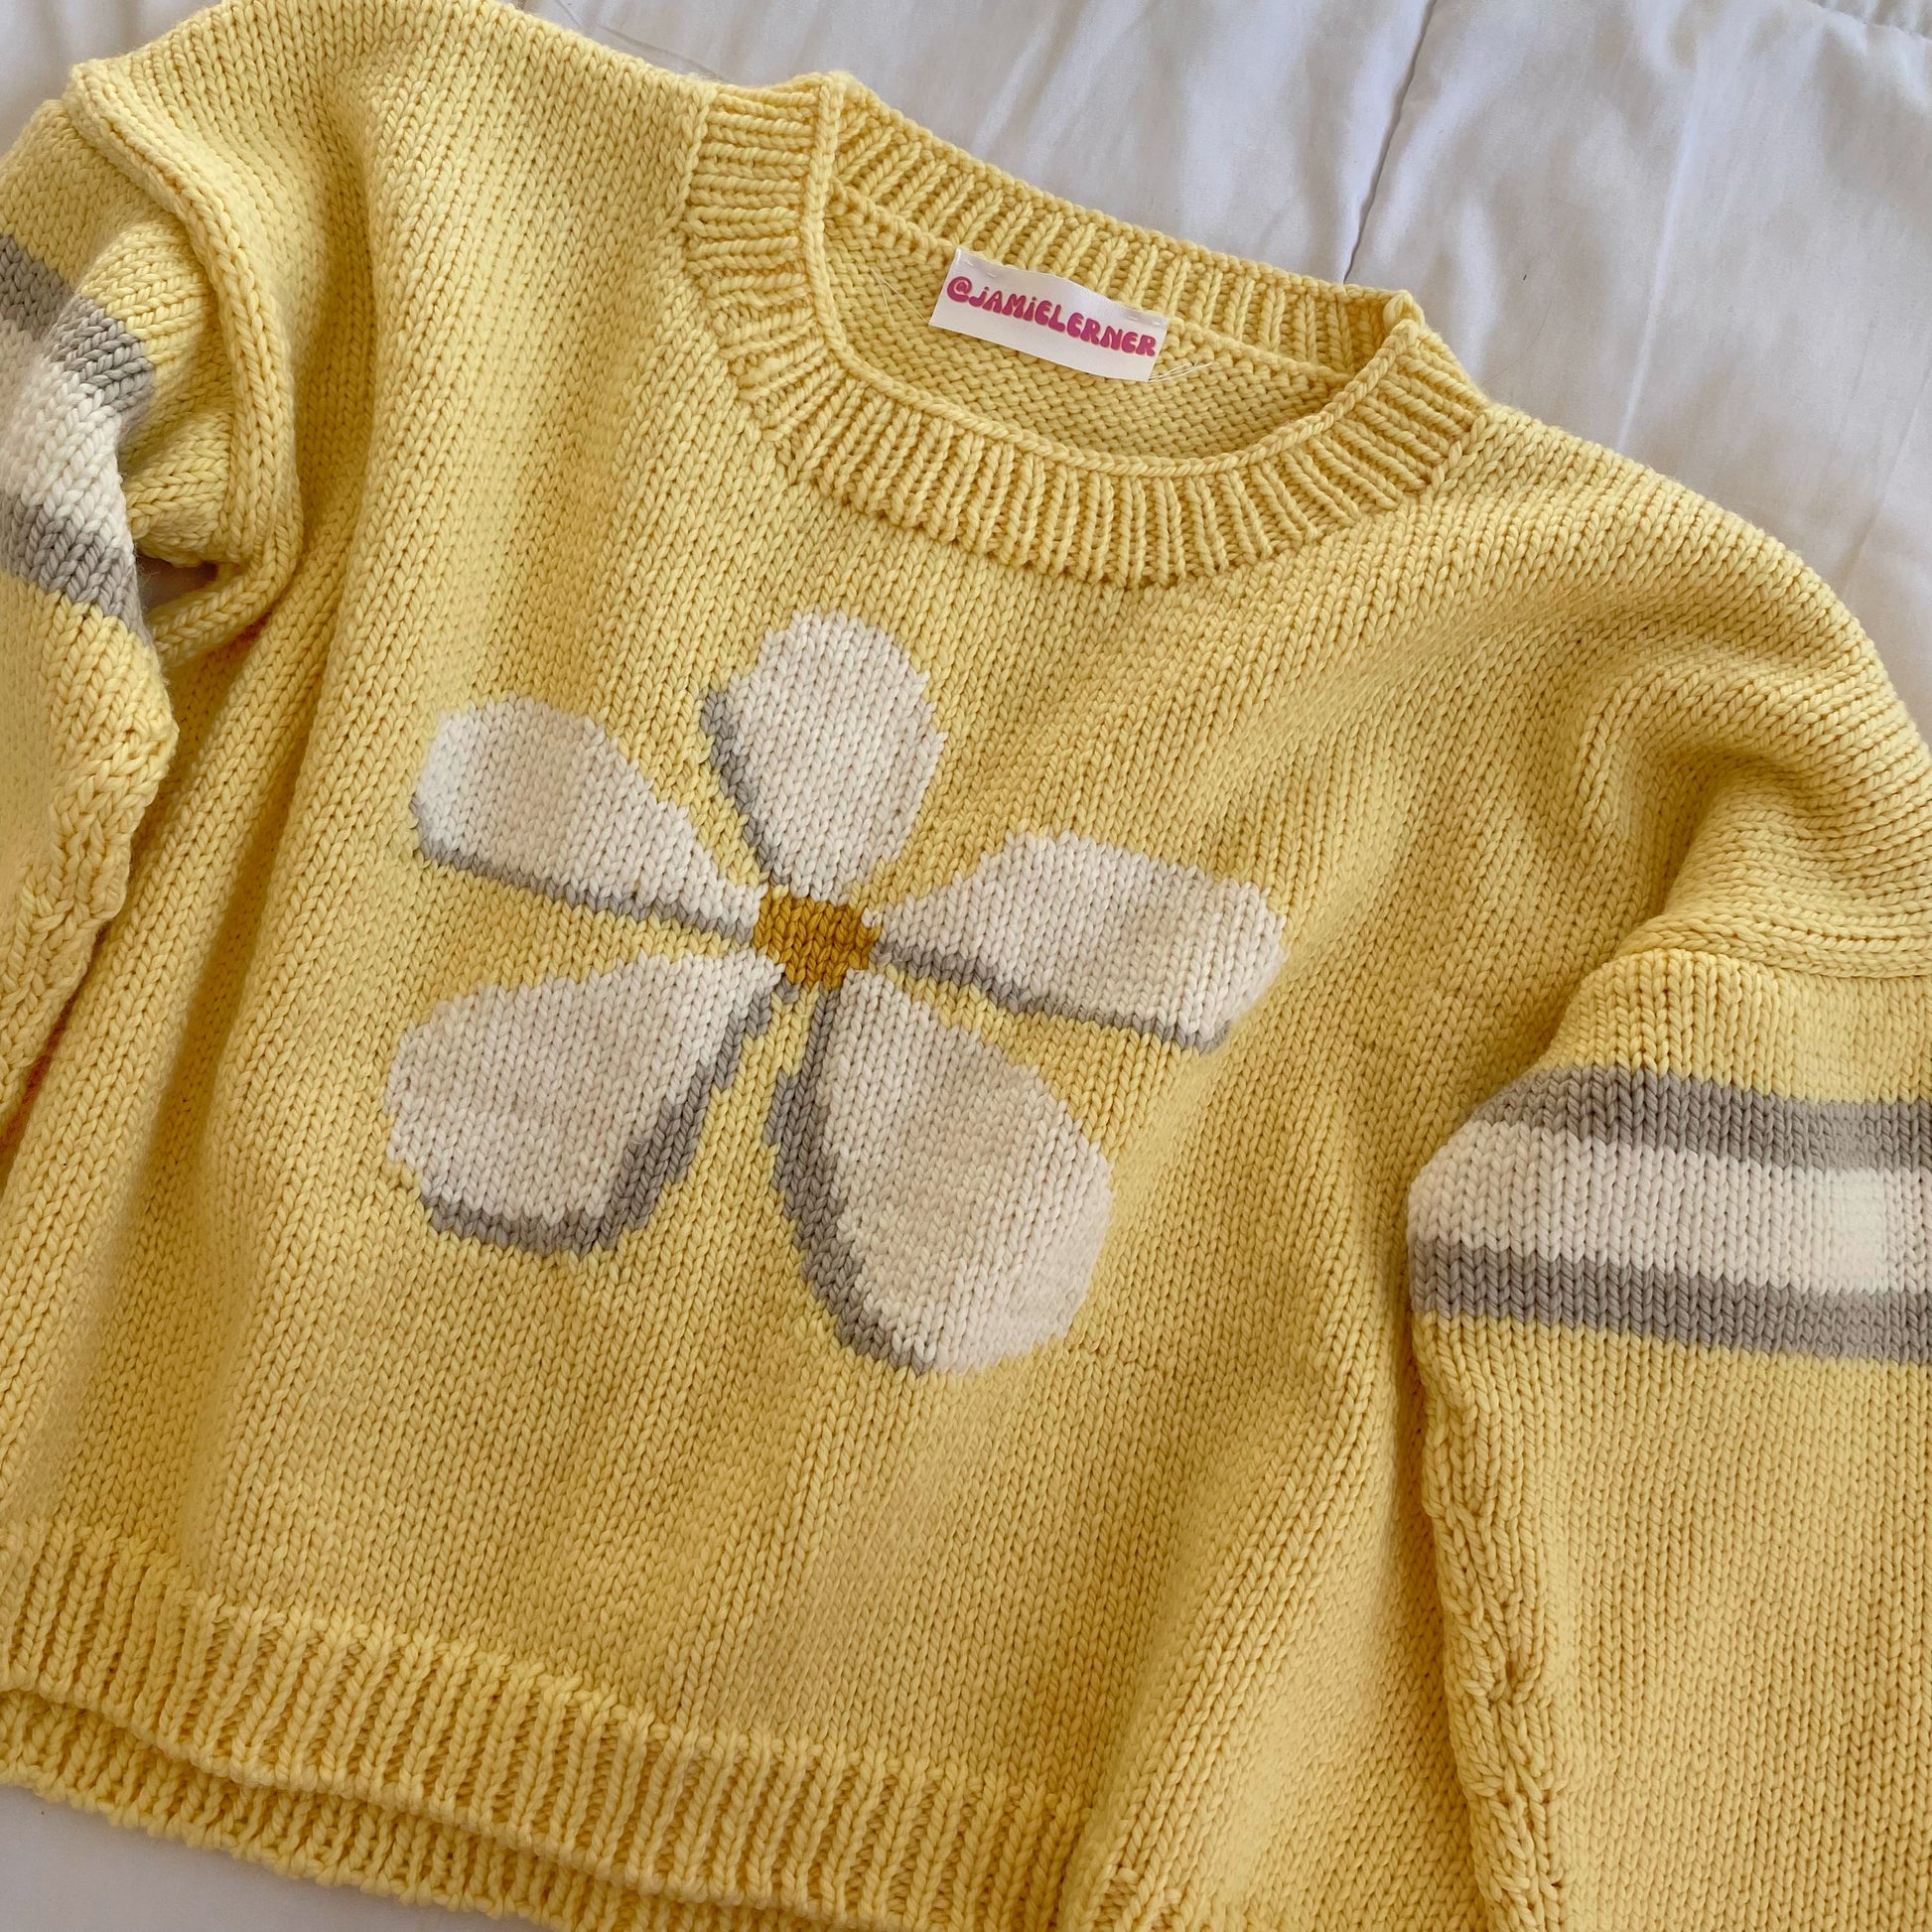 Shaya Pets Sunflower Days Luxury Sweater - Black Yellow - Size Small